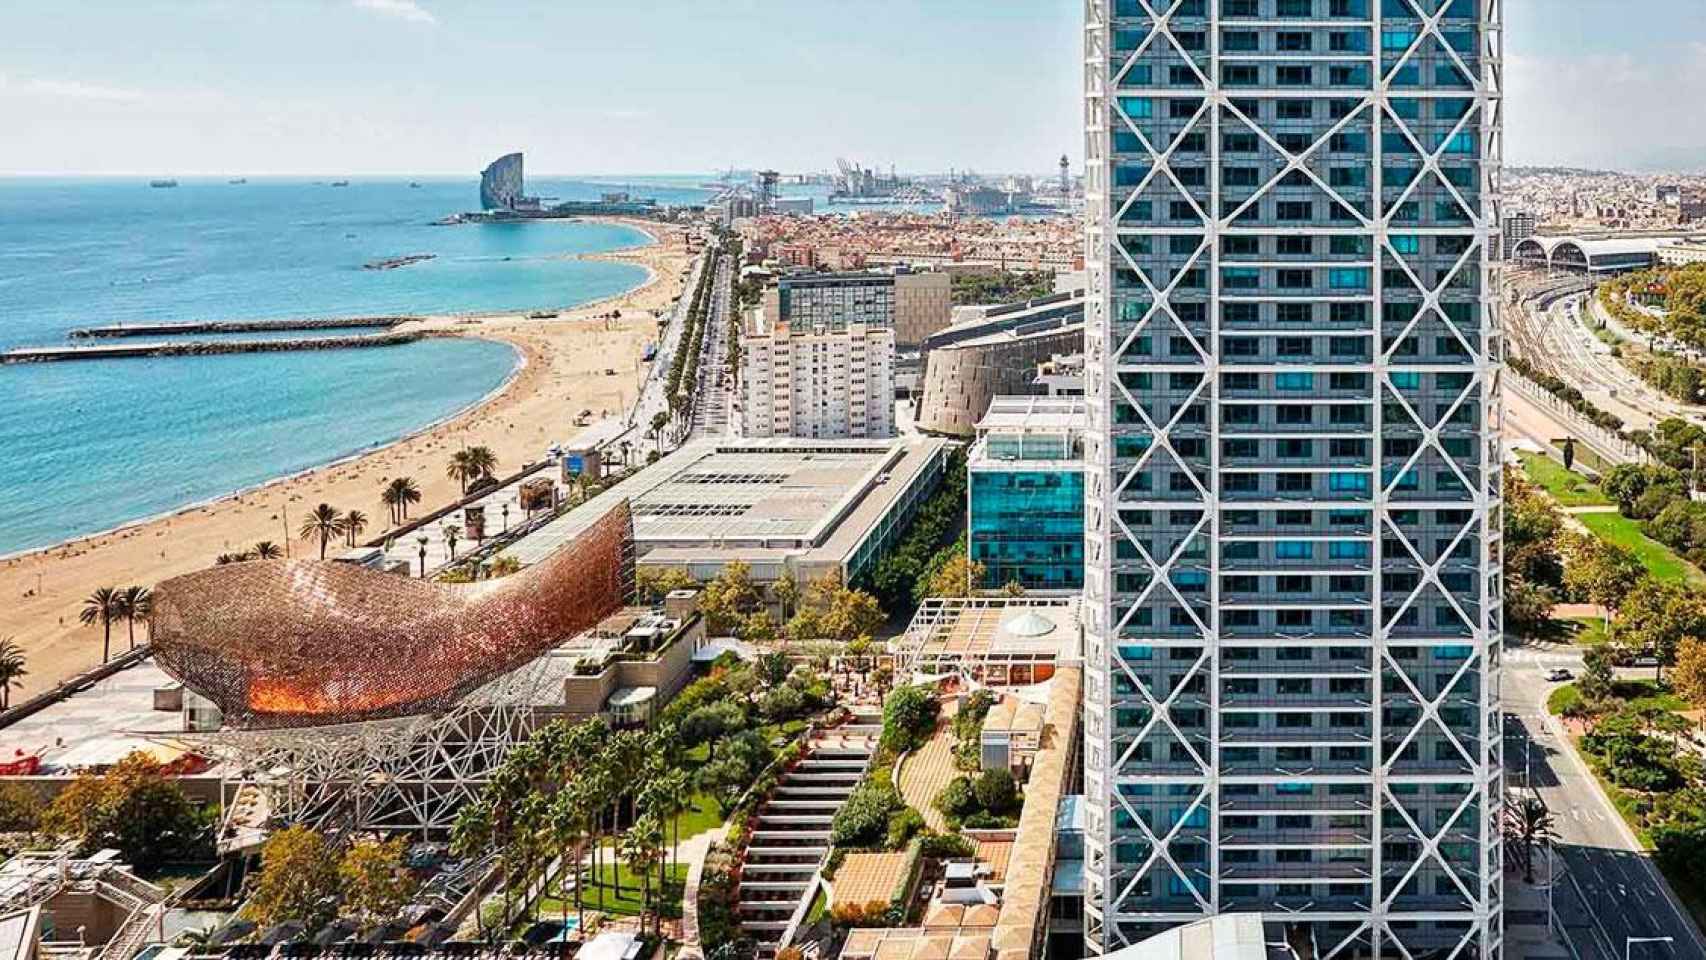 Imagen del Hotel Arts de Barcelona y la pastilla de litoral que quiere comprar en subasta / CG